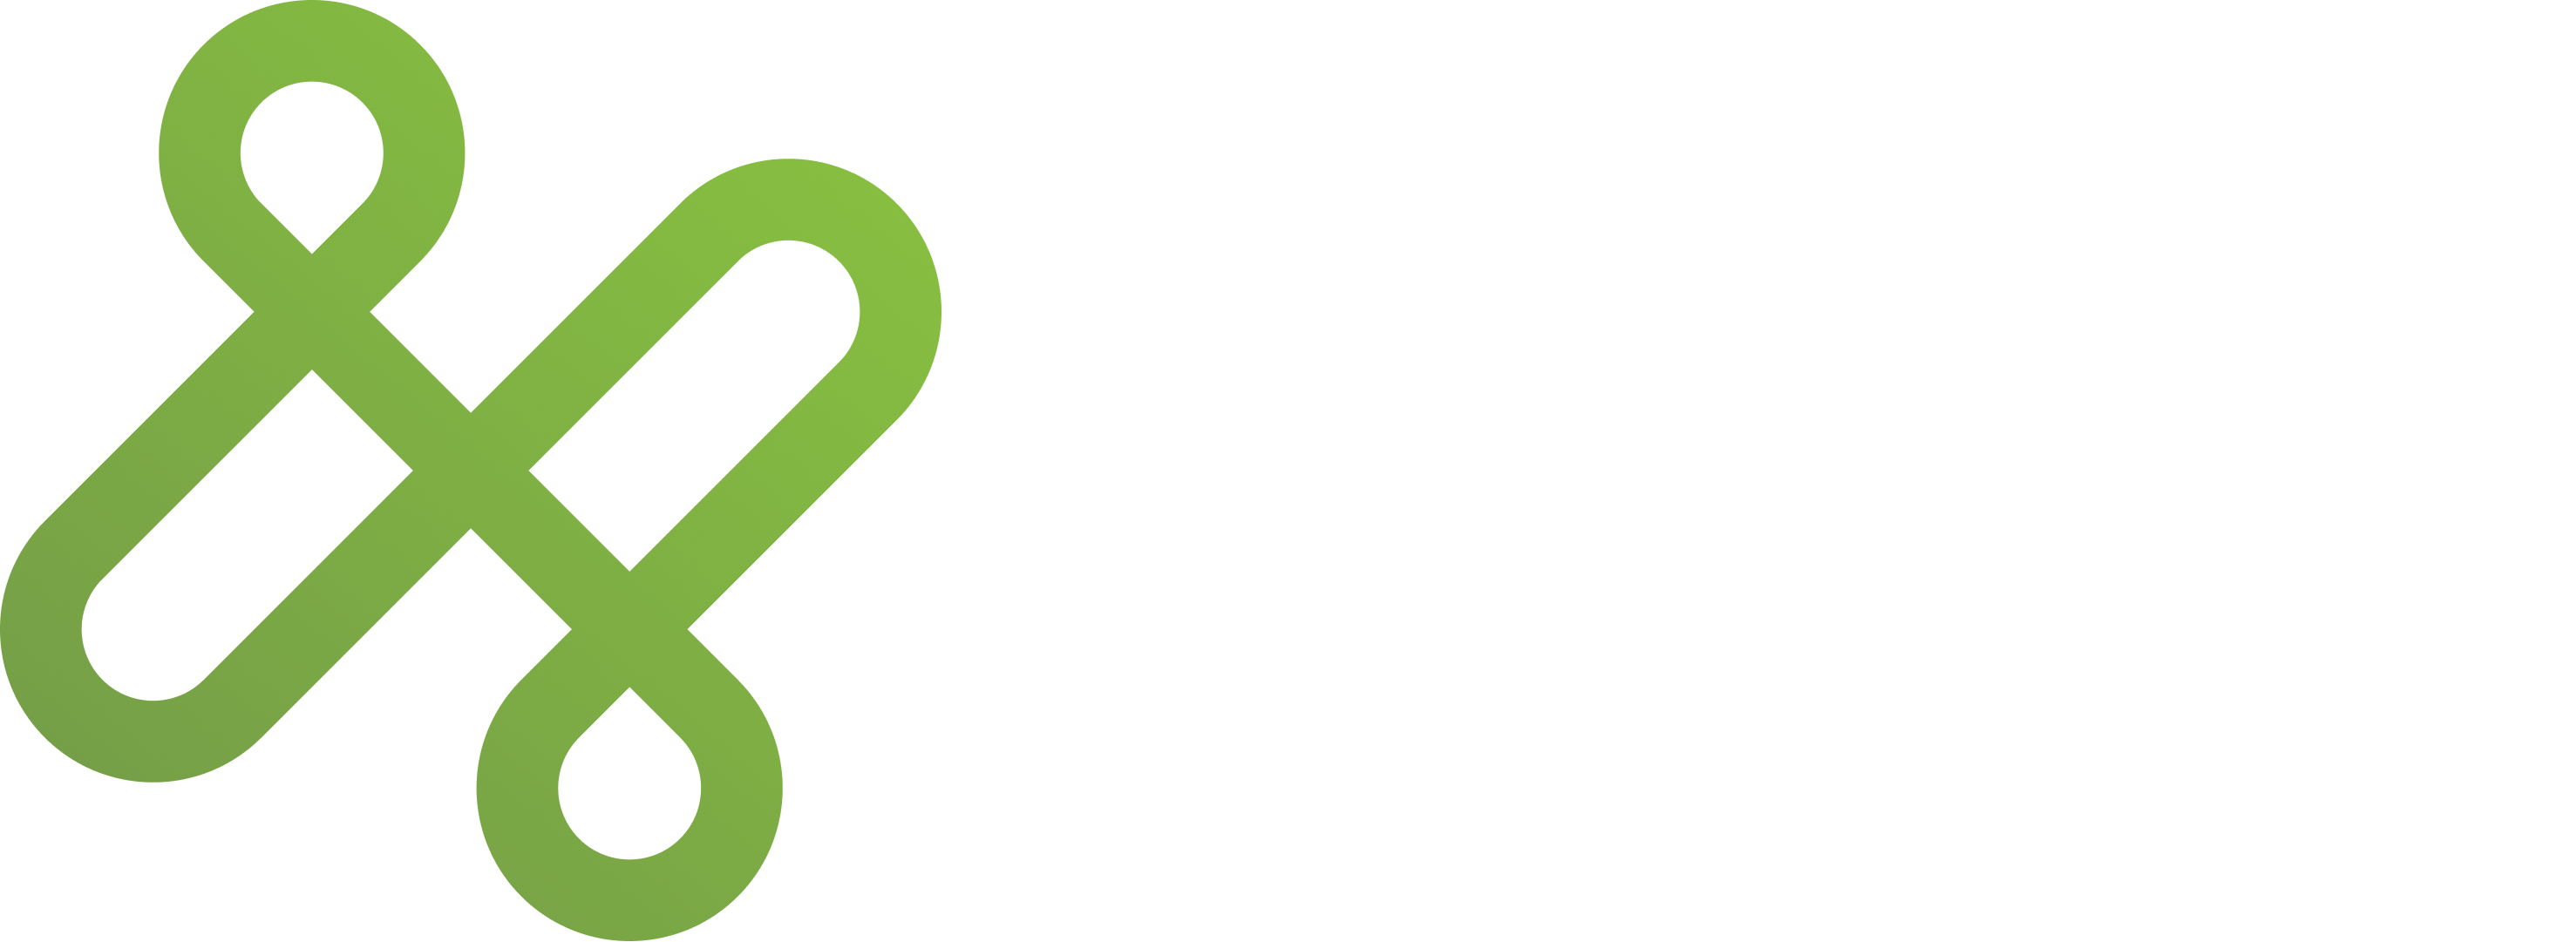 easy detox logo - white text